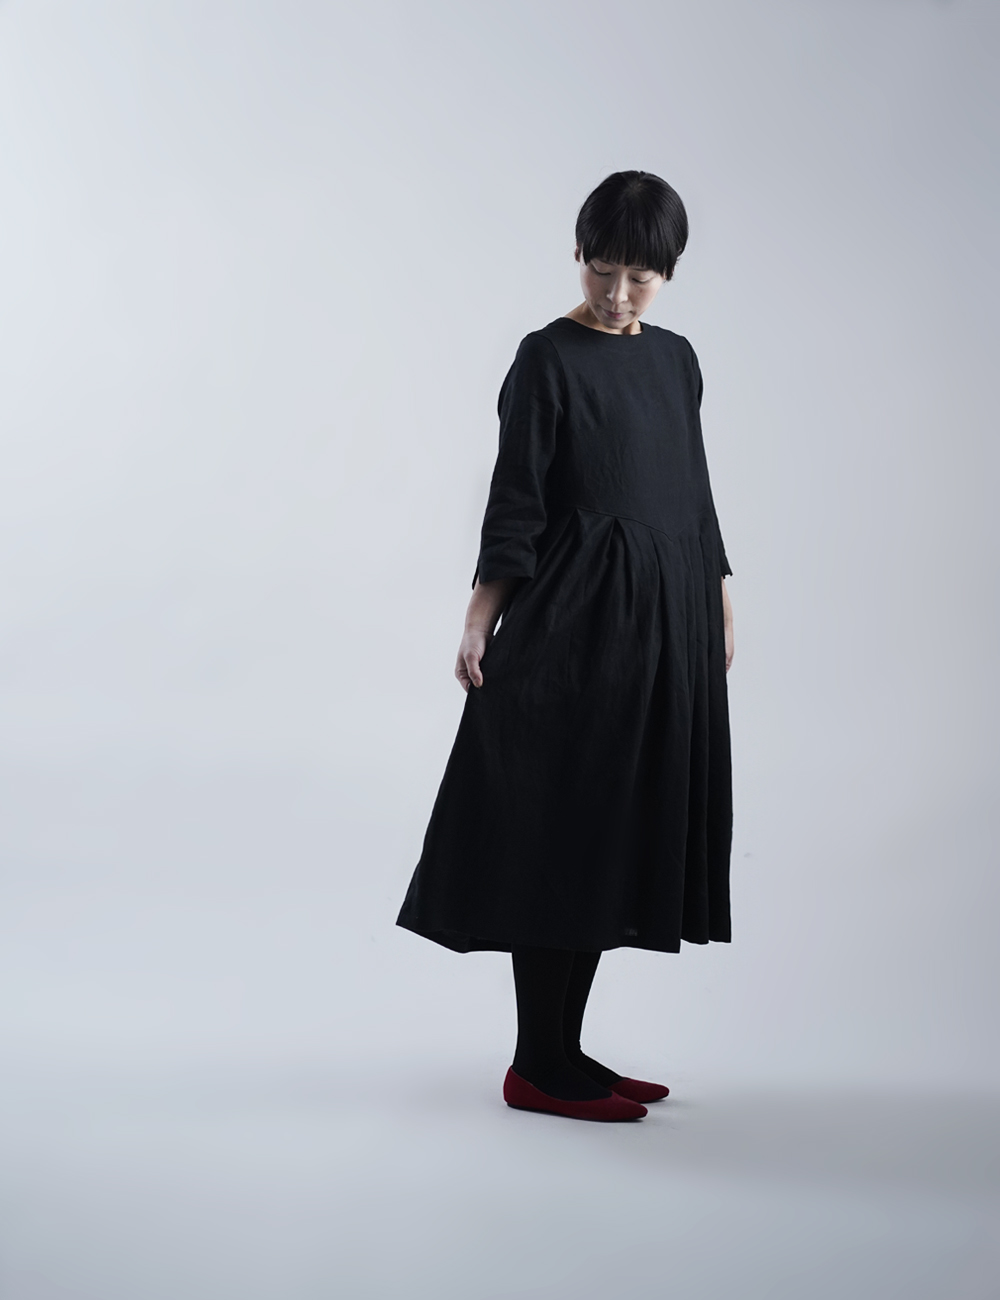 【リネンワンピース】wafu 鍵盤タックドレス / 黒色(くろいろ) a013o-bck1